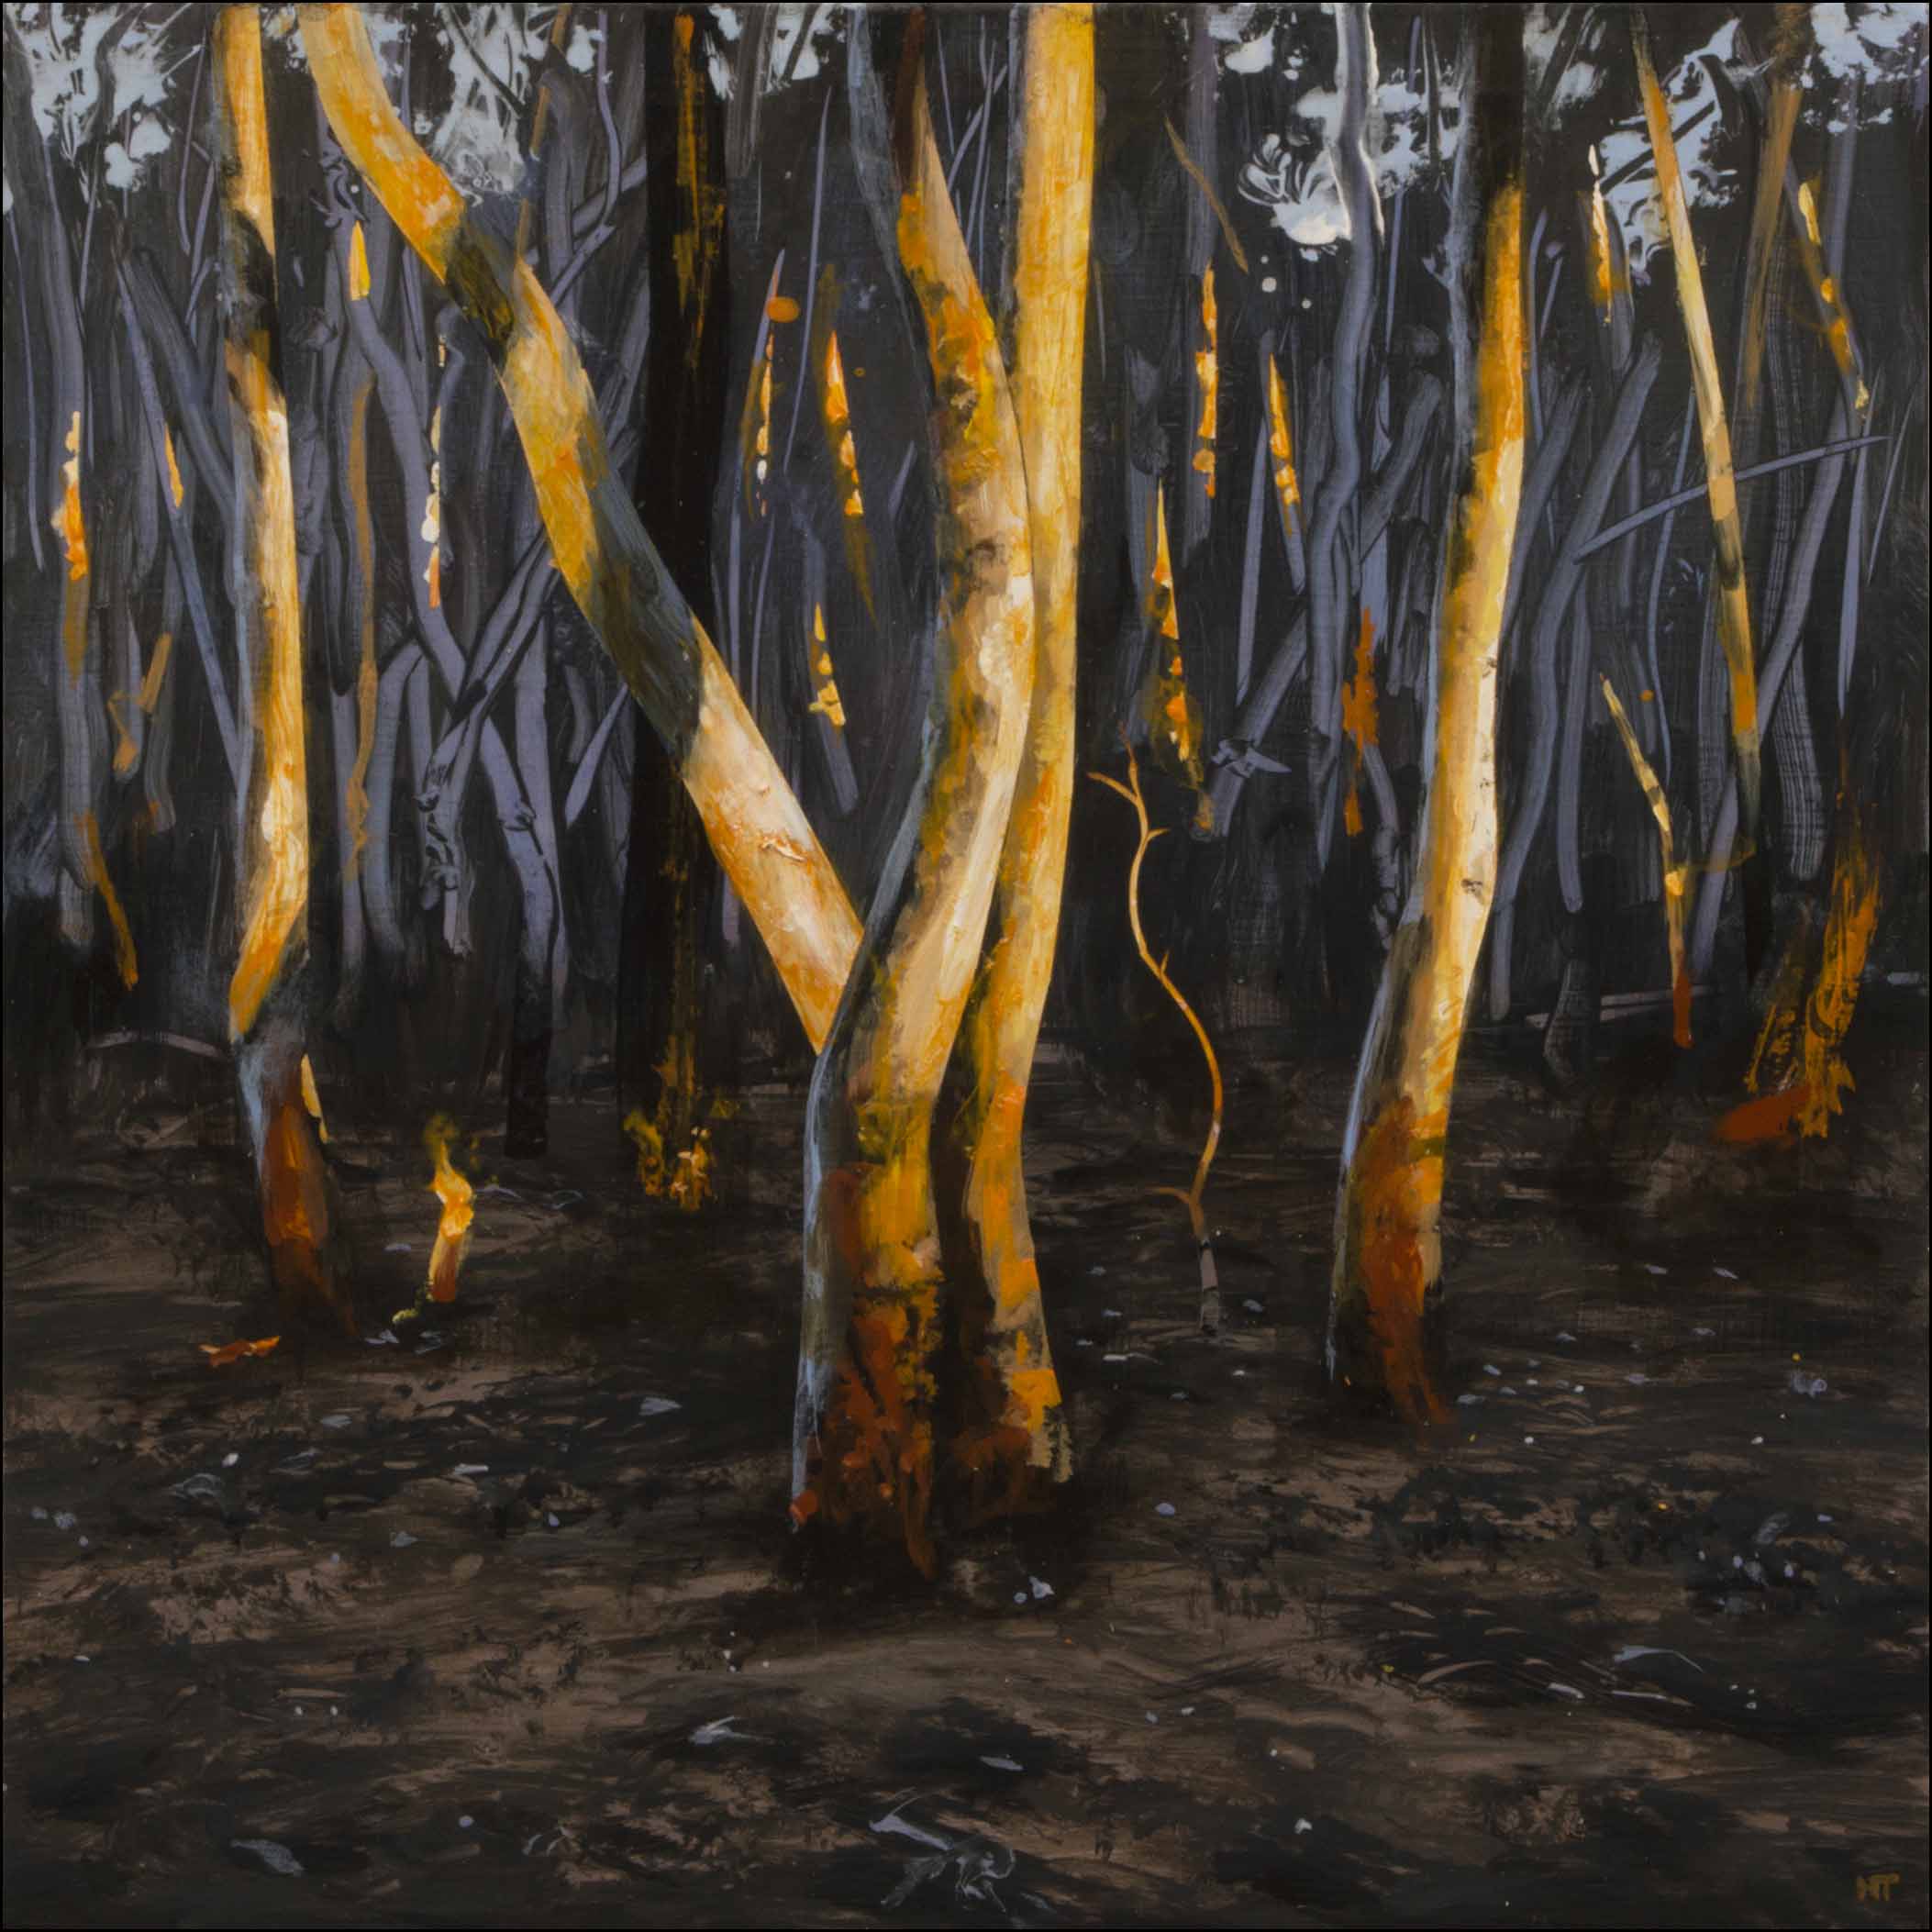 Neil Taylor 'Sundown Dancers' acrylic on canvas 40 x 40cm $3,500